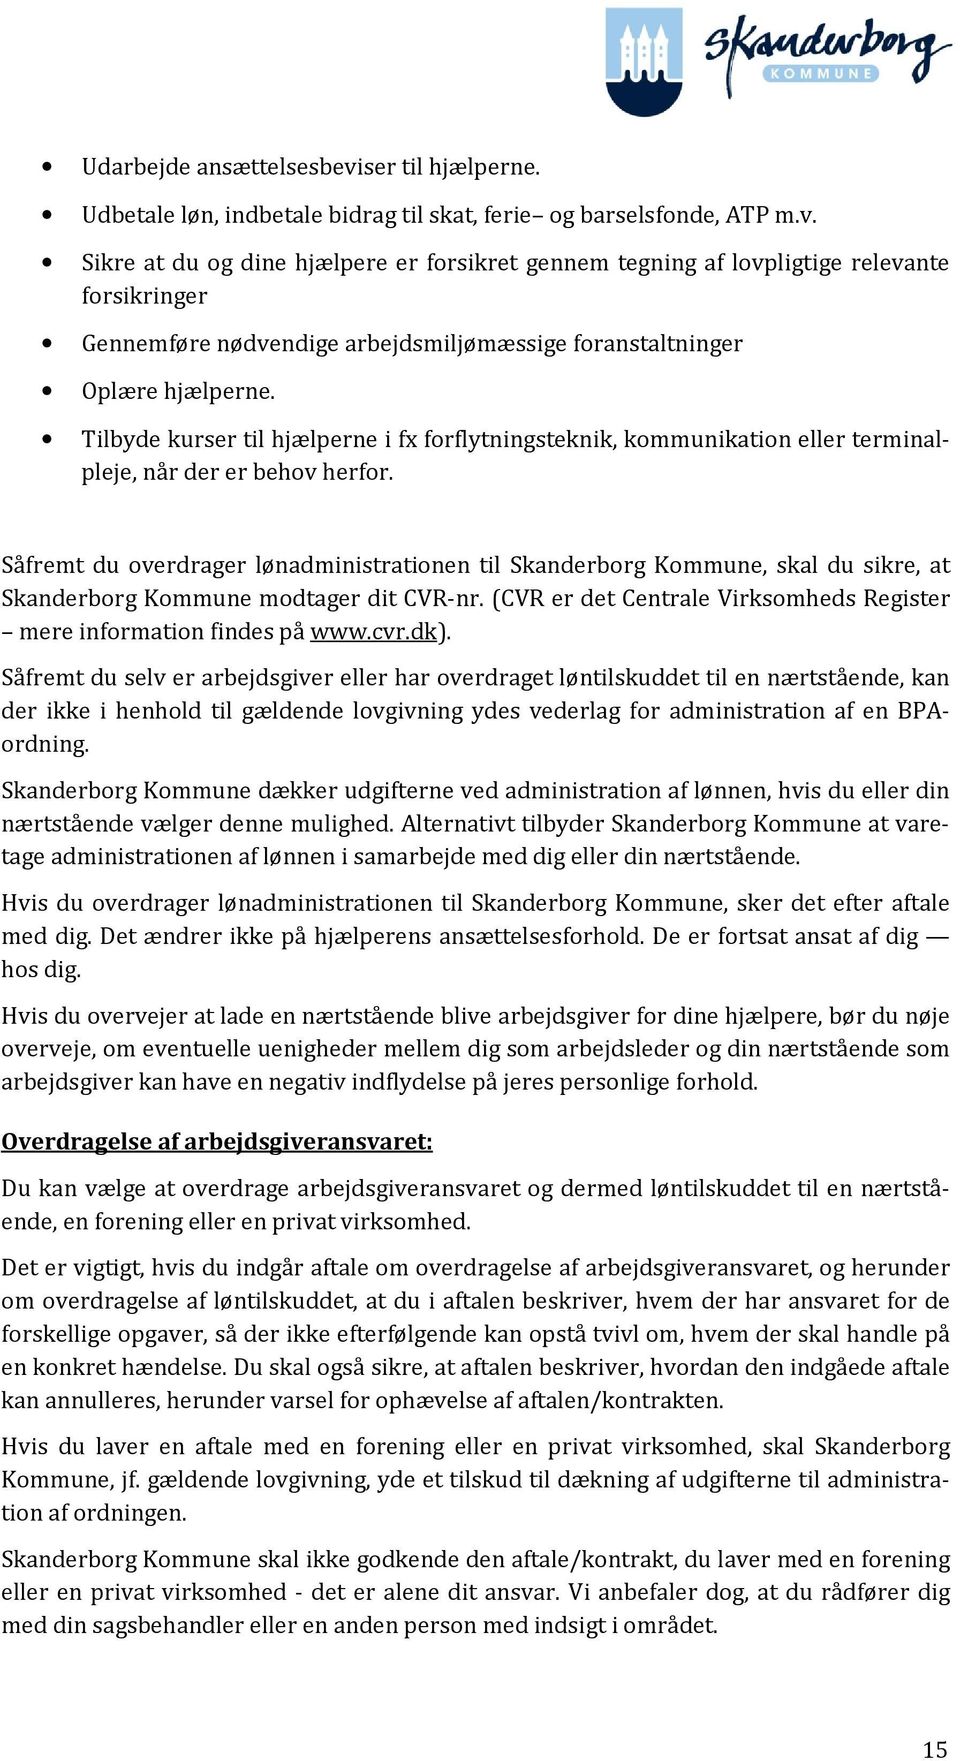 Såfremt du overdrager lønadministrationen til Skanderborg Kommune, skal du sikre, at Skanderborg Kommune modtager dit CVR-nr. (CVR er det Centrale Virksomheds Register mere information findes på www.